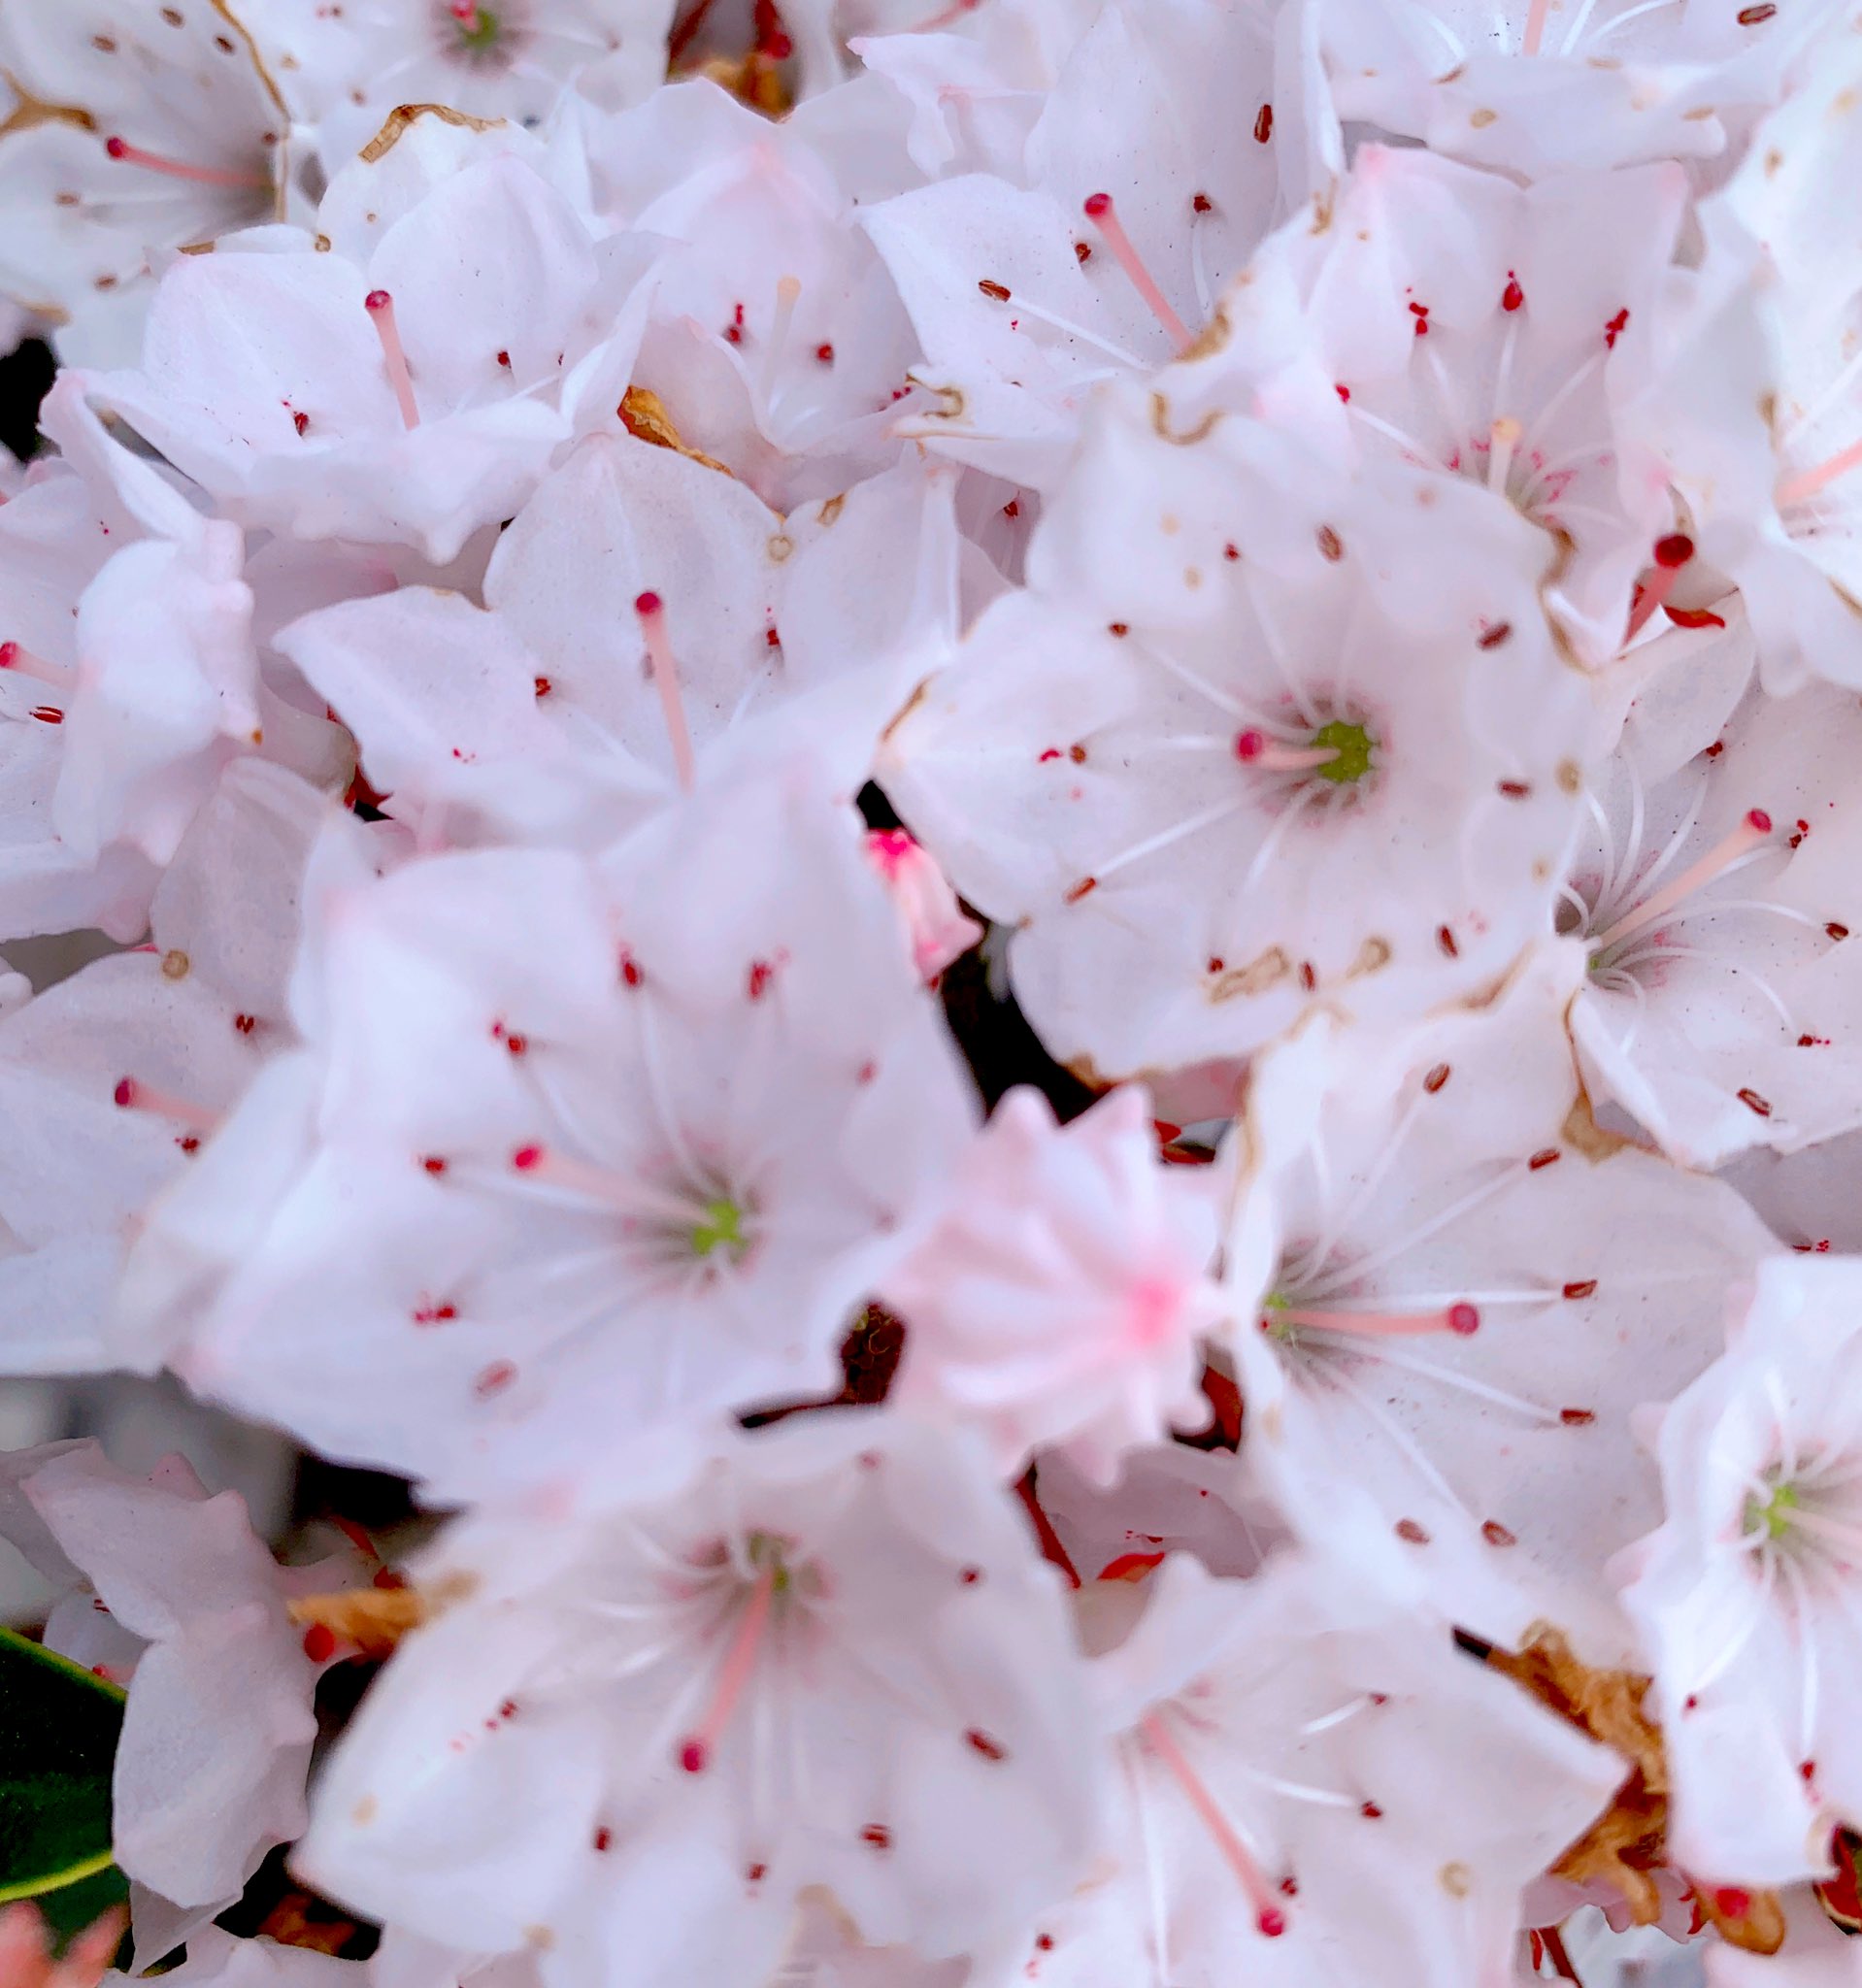 Aimomo みなさま こんにちは カルミアの花 が 咲いていました 花言葉は 大きな希望 です 素敵な午後をお過ごしくださいね カルミア 花言葉 花好き 花の写真 Iphone越しの私の世界 花撮り人 T Co H1g2k7q51l Twitter